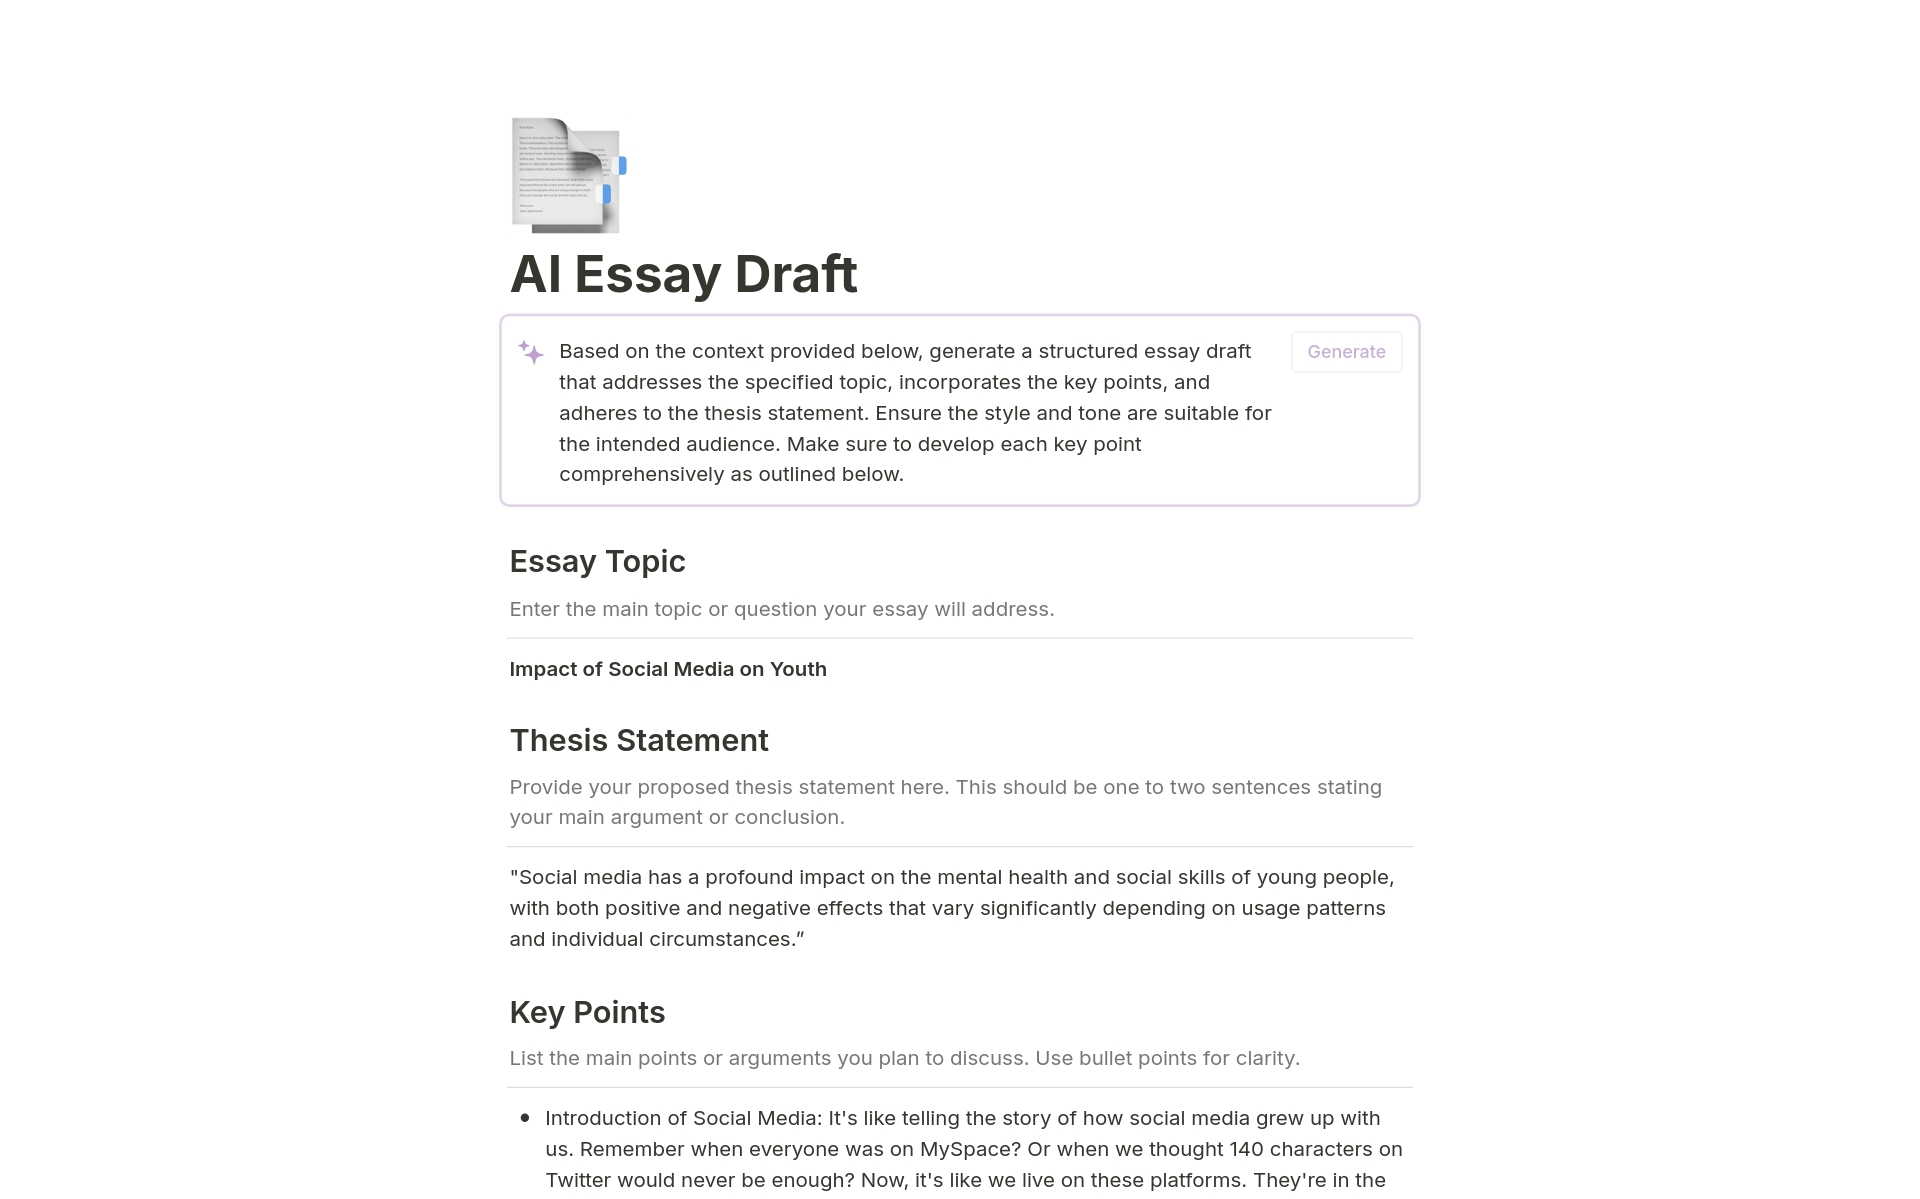 Vista previa de una plantilla para AI Essay Draft